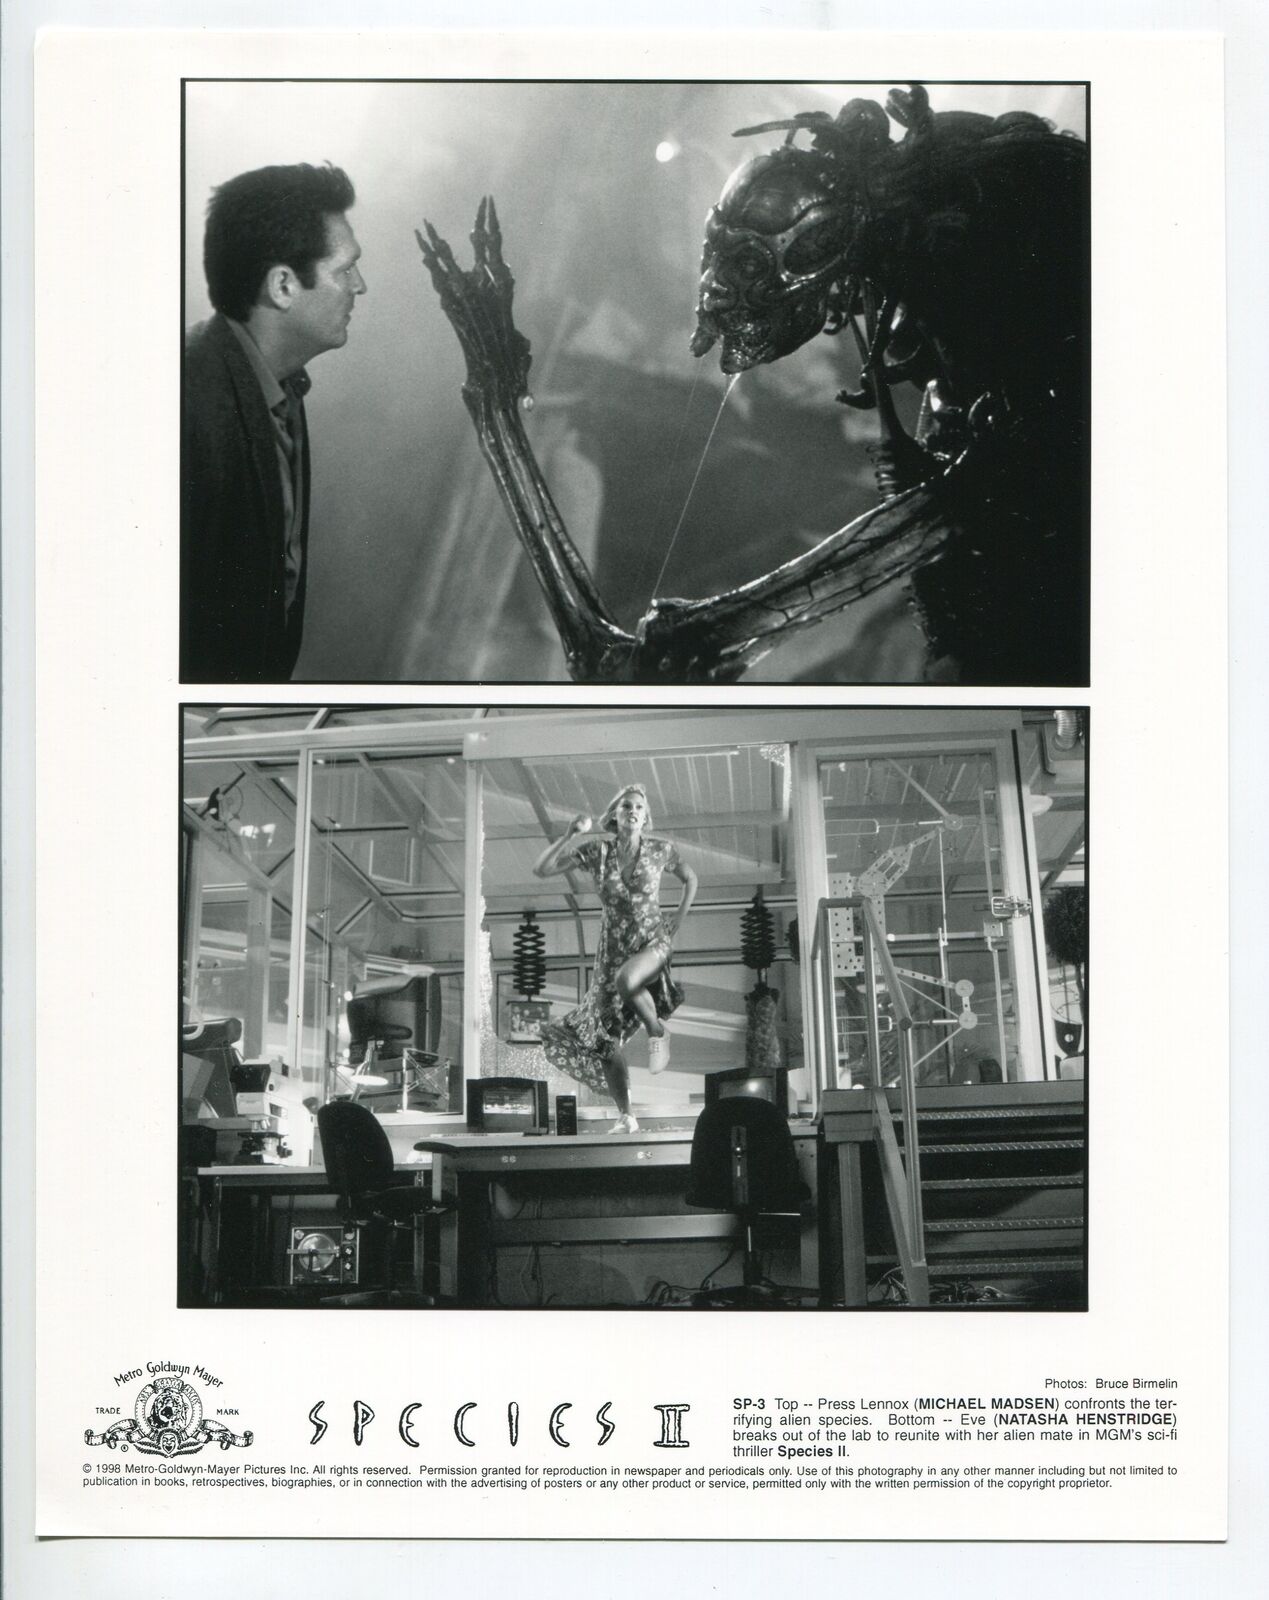 Species II-Natasha Hestridge-Michael Madsen-8x10-B&W-Still-Horror-Sci-Fi-NM